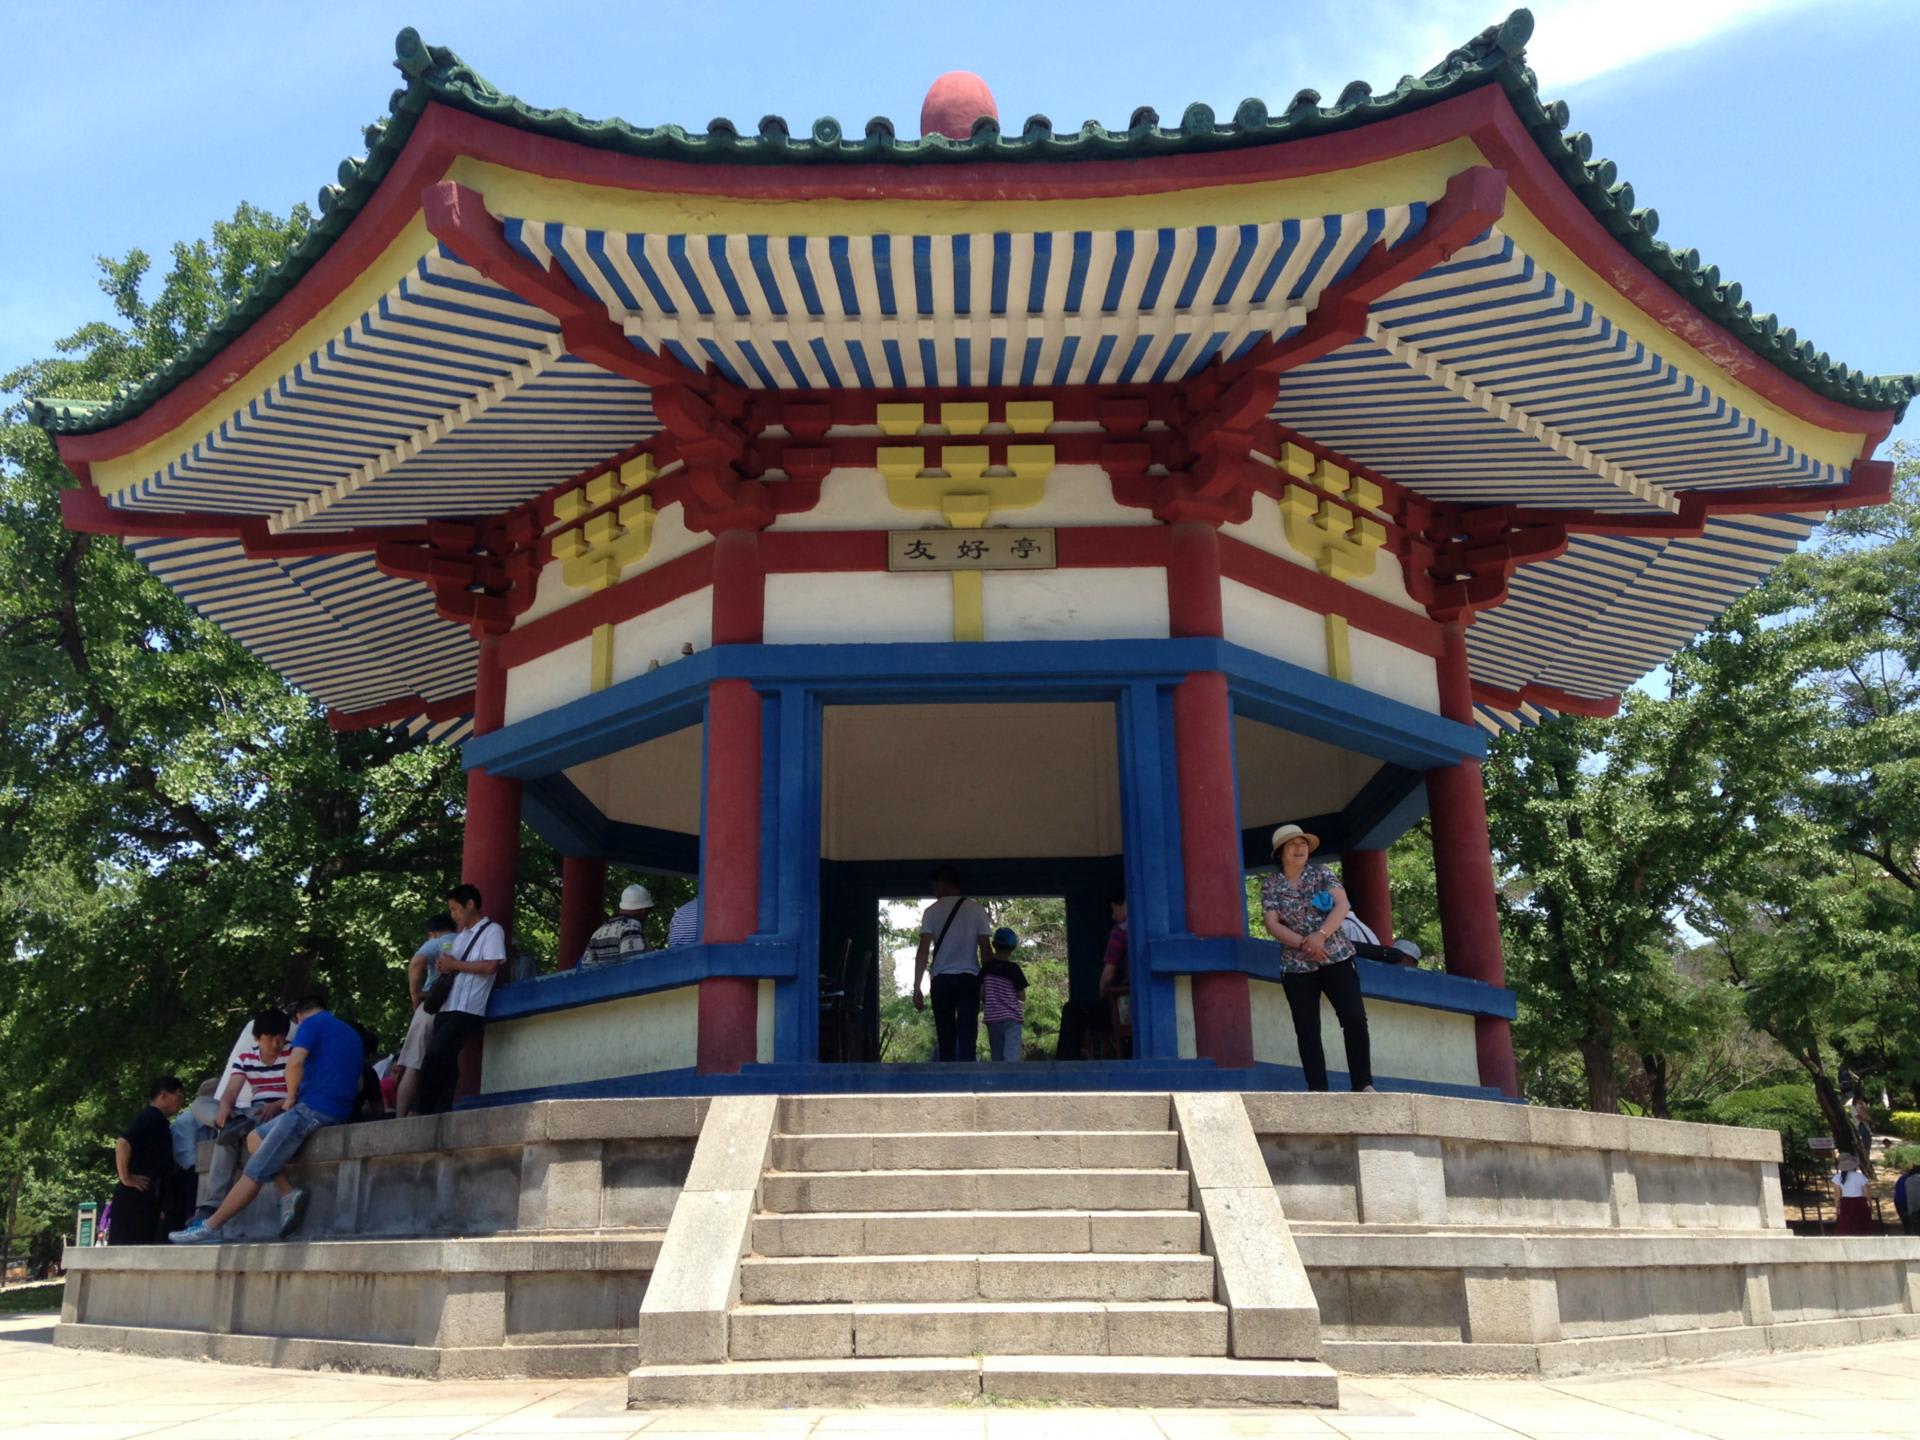 旧太子殿 － 中山公園の友好亭 - HBD in Liaodong Peninsula